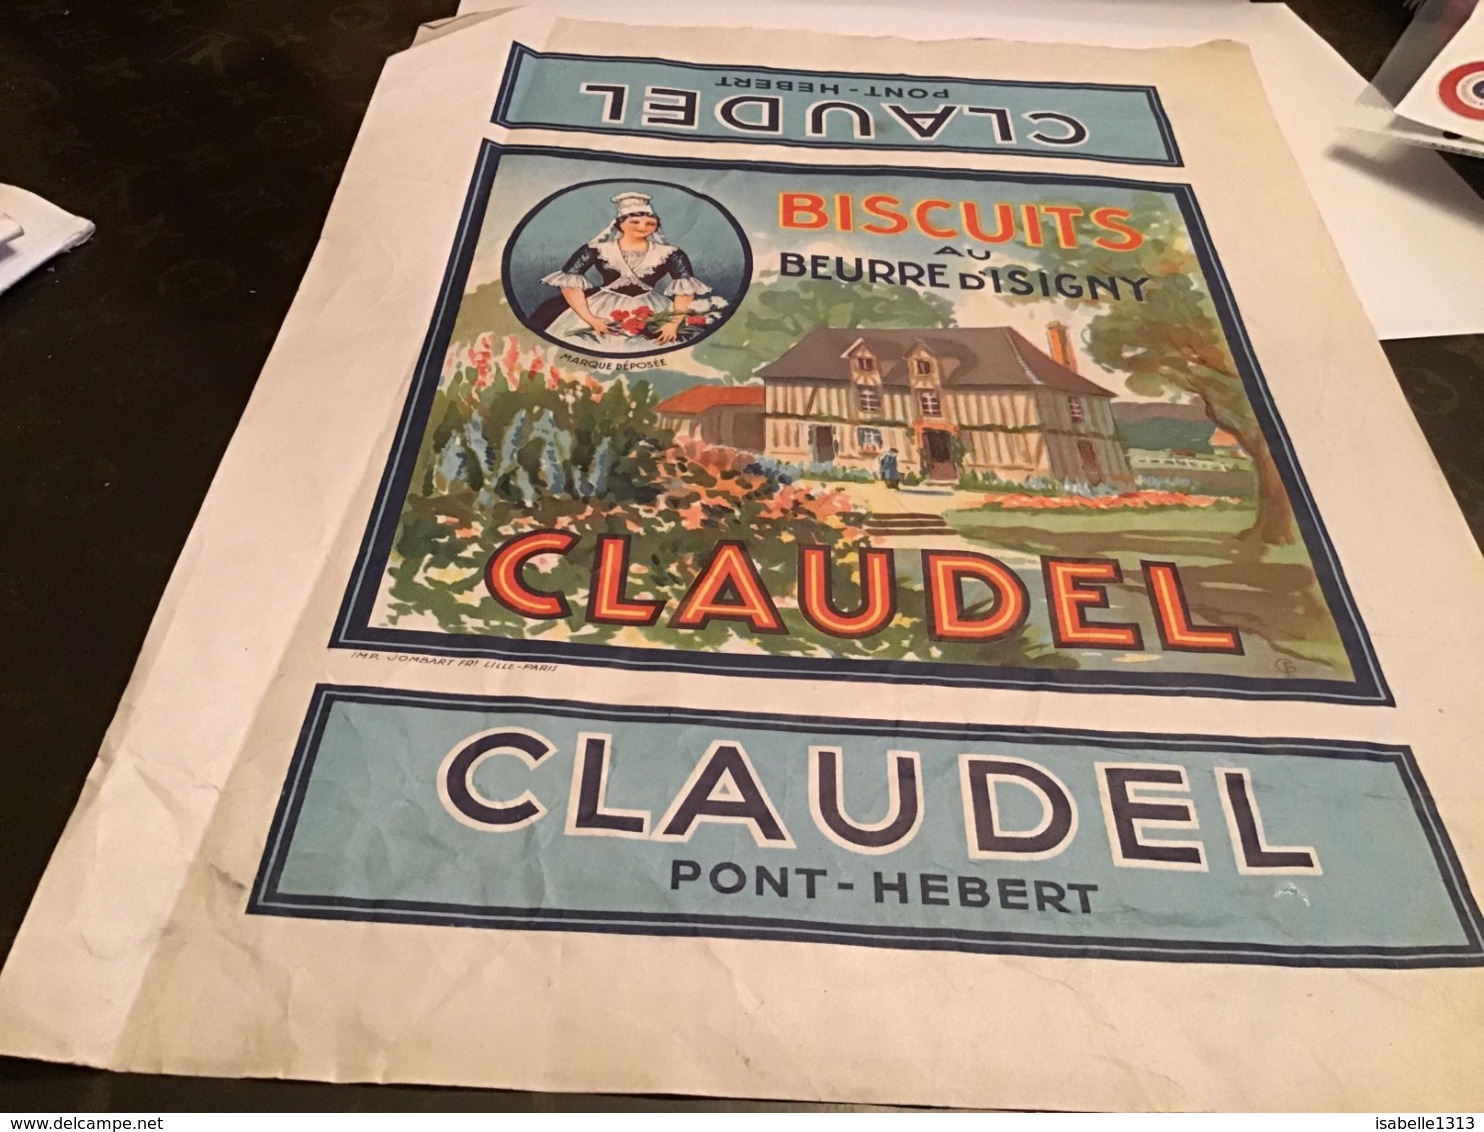 Grande Publicité Biscuits Au Beurre D Isigny Claudel Pont Hebert - Advertising